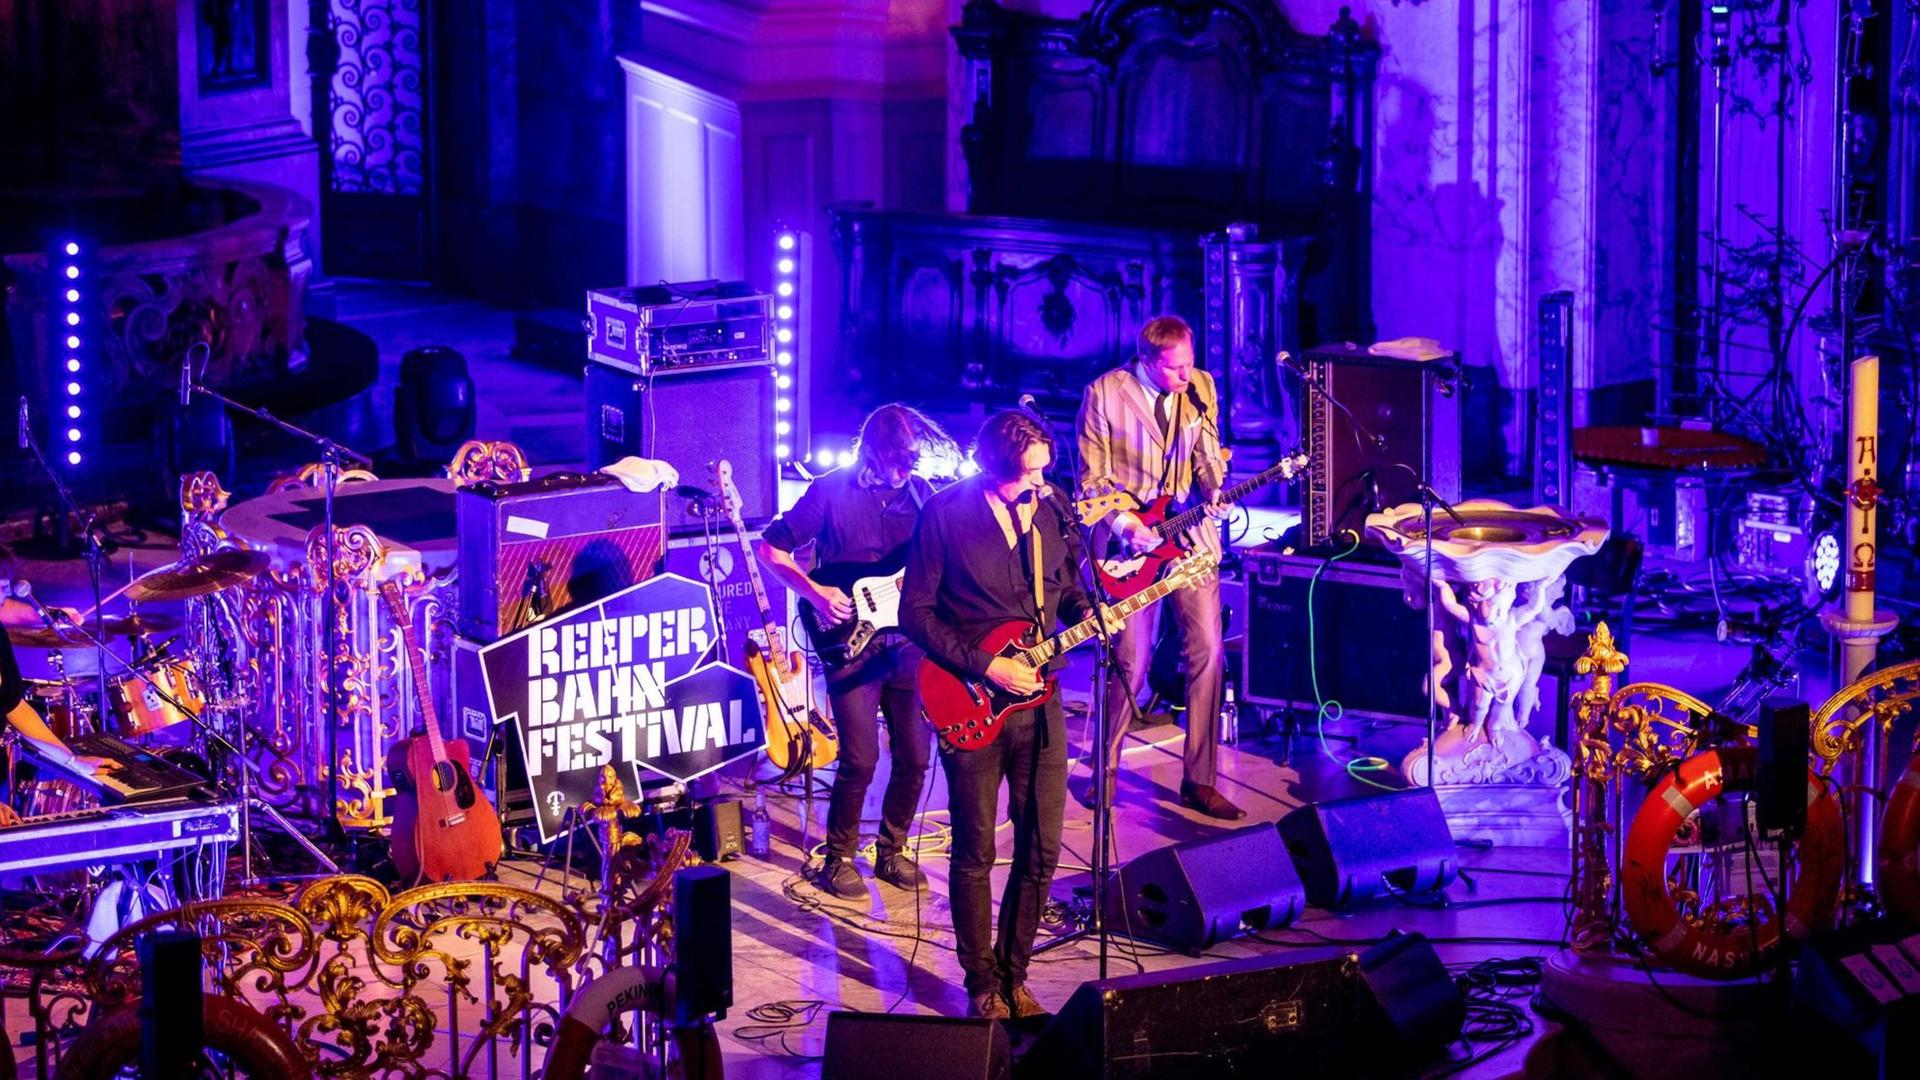 Die Band Die Sterne spielt am 19. September 2020 ein Konzert in der Hauptkirche St. Michaelis im Rahmen des Reeperbahn Festivals in Hamburg.